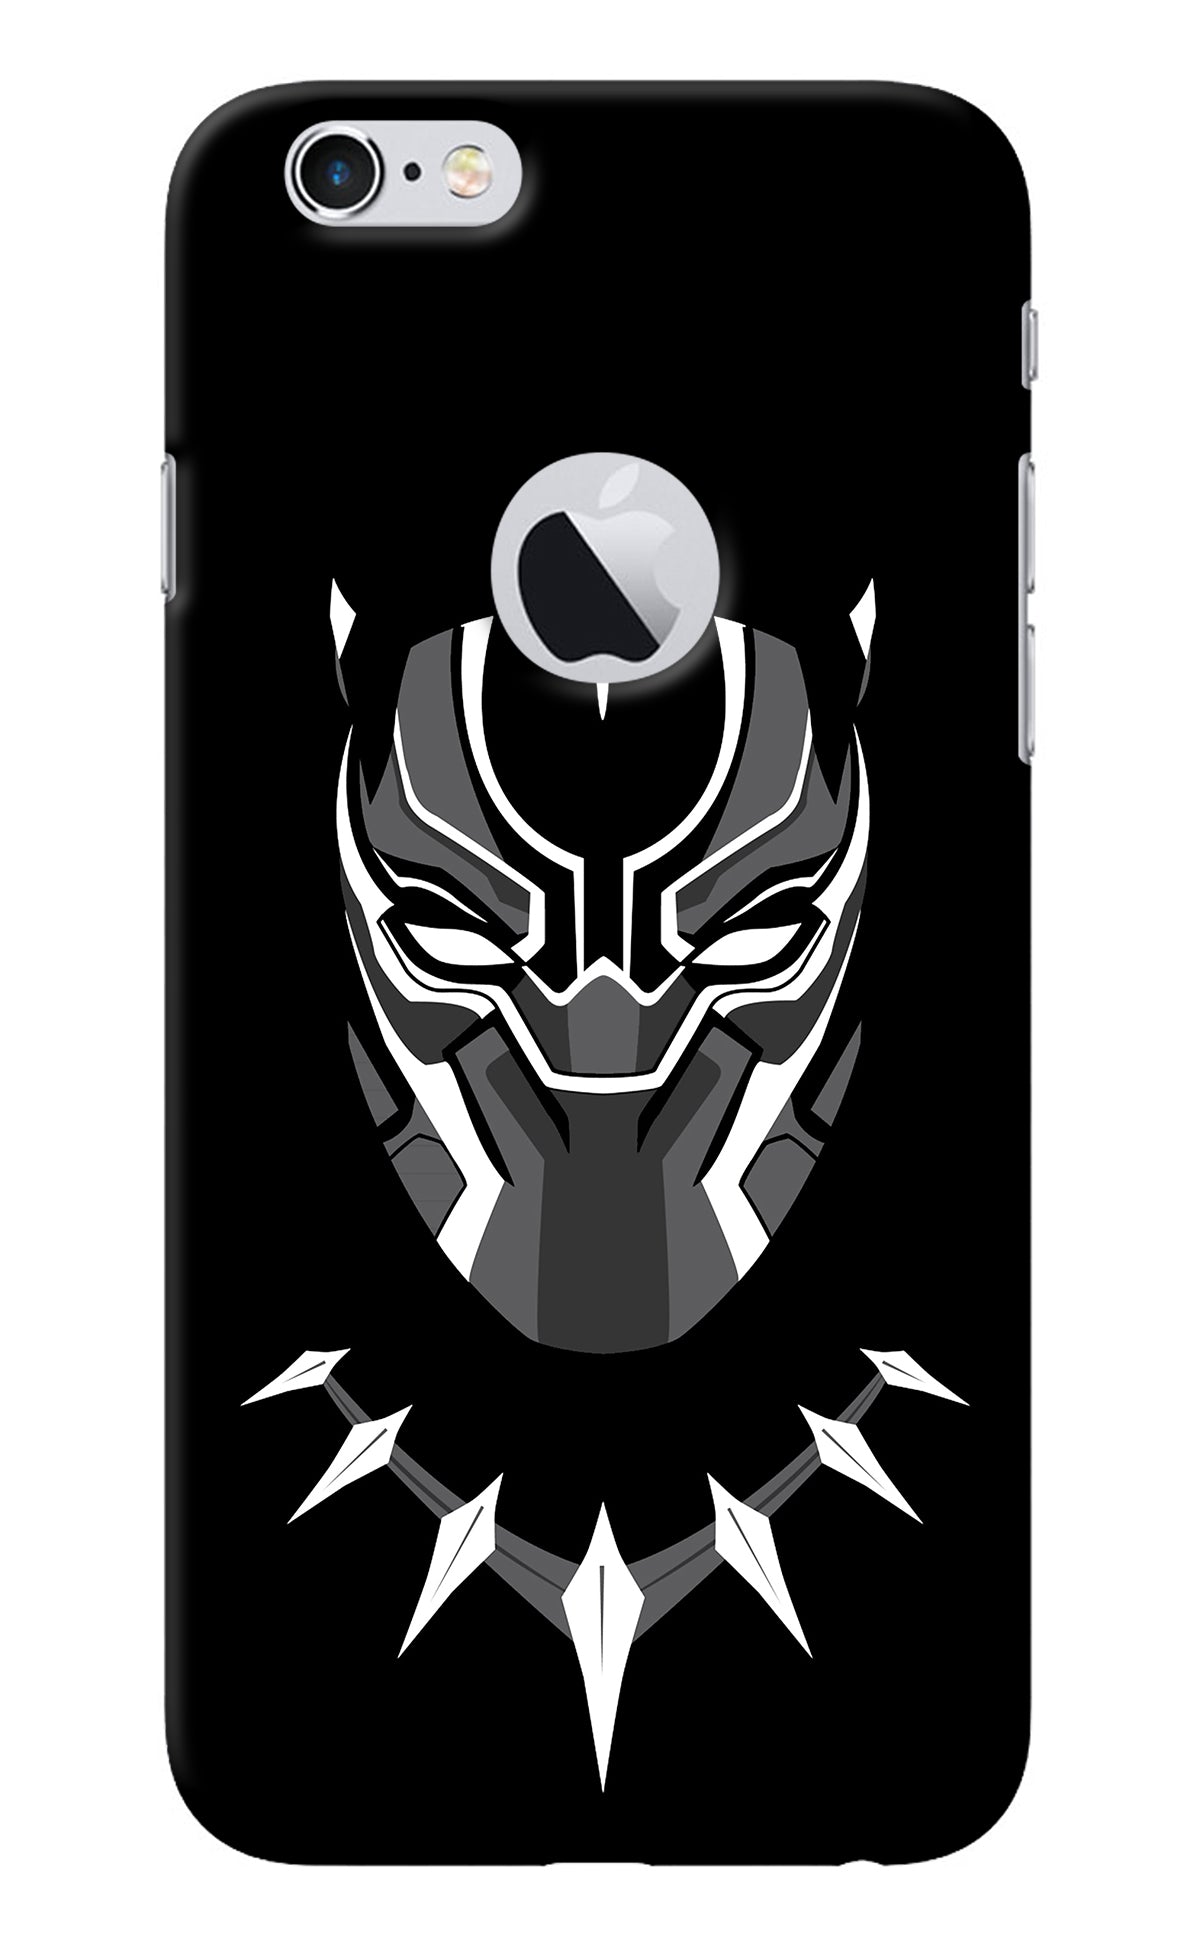 Black Panther iPhone 6 Logocut Back Cover